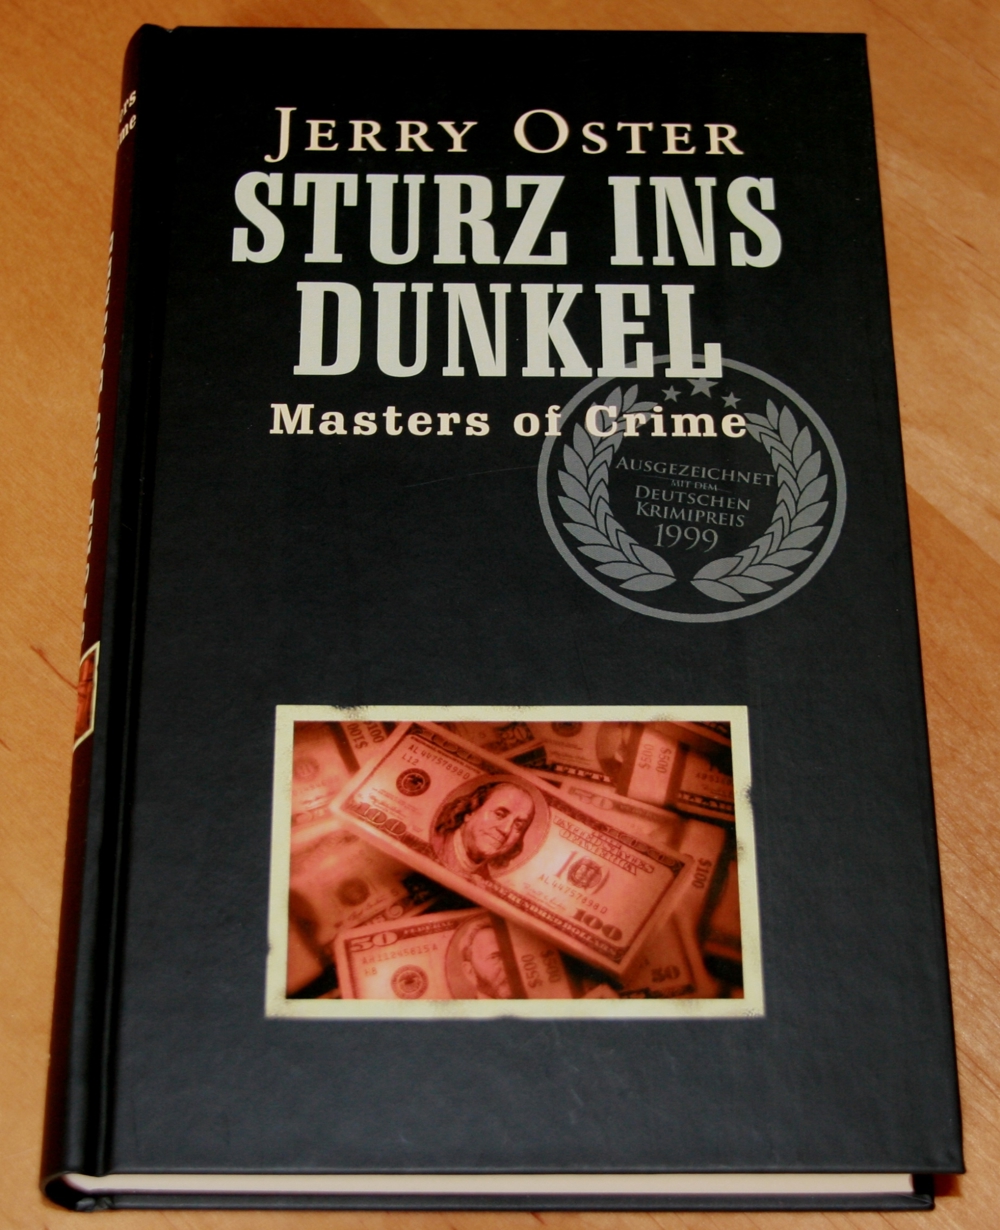 NEU - Buch "Sturz ins Dunkel" von Jerry Oster - Krimi - Thriller